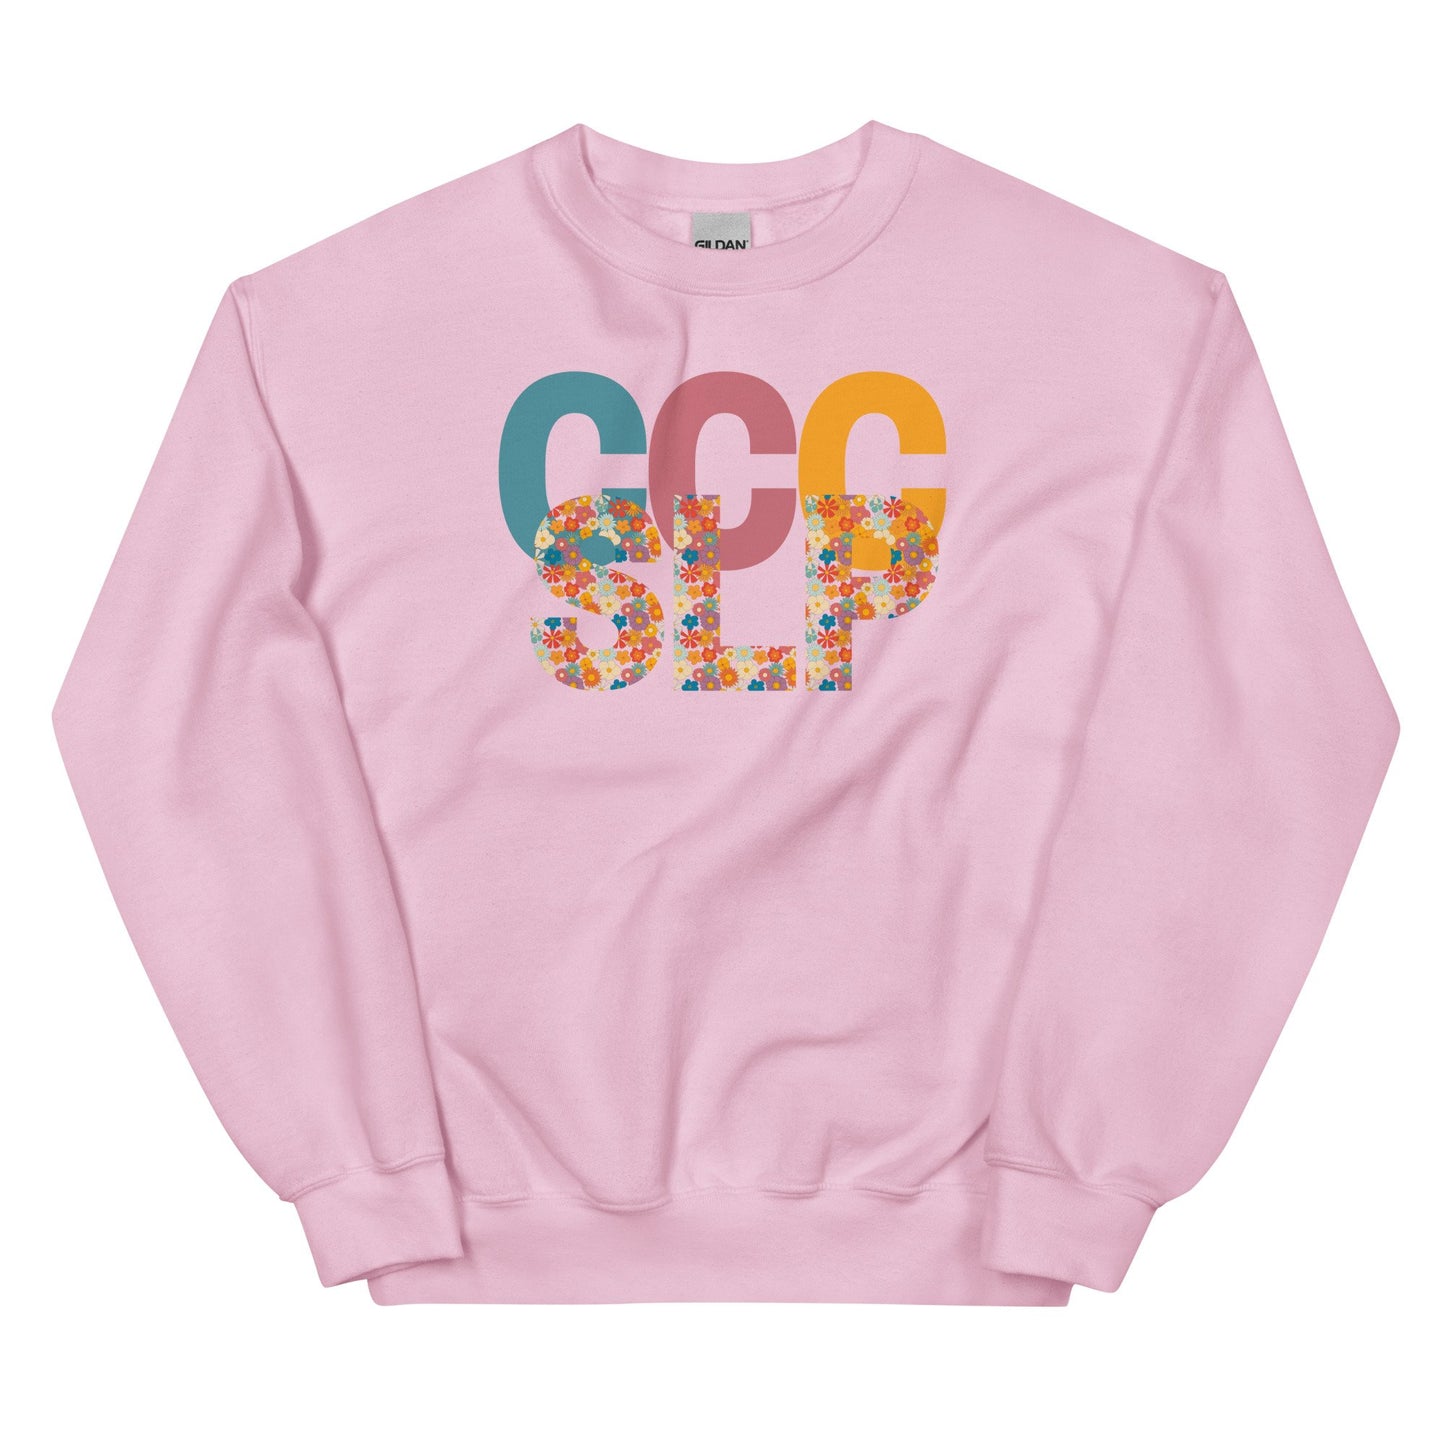 unisex-crew-neck-sweatshirt-light-pink-front-63084c6969d39.jpg